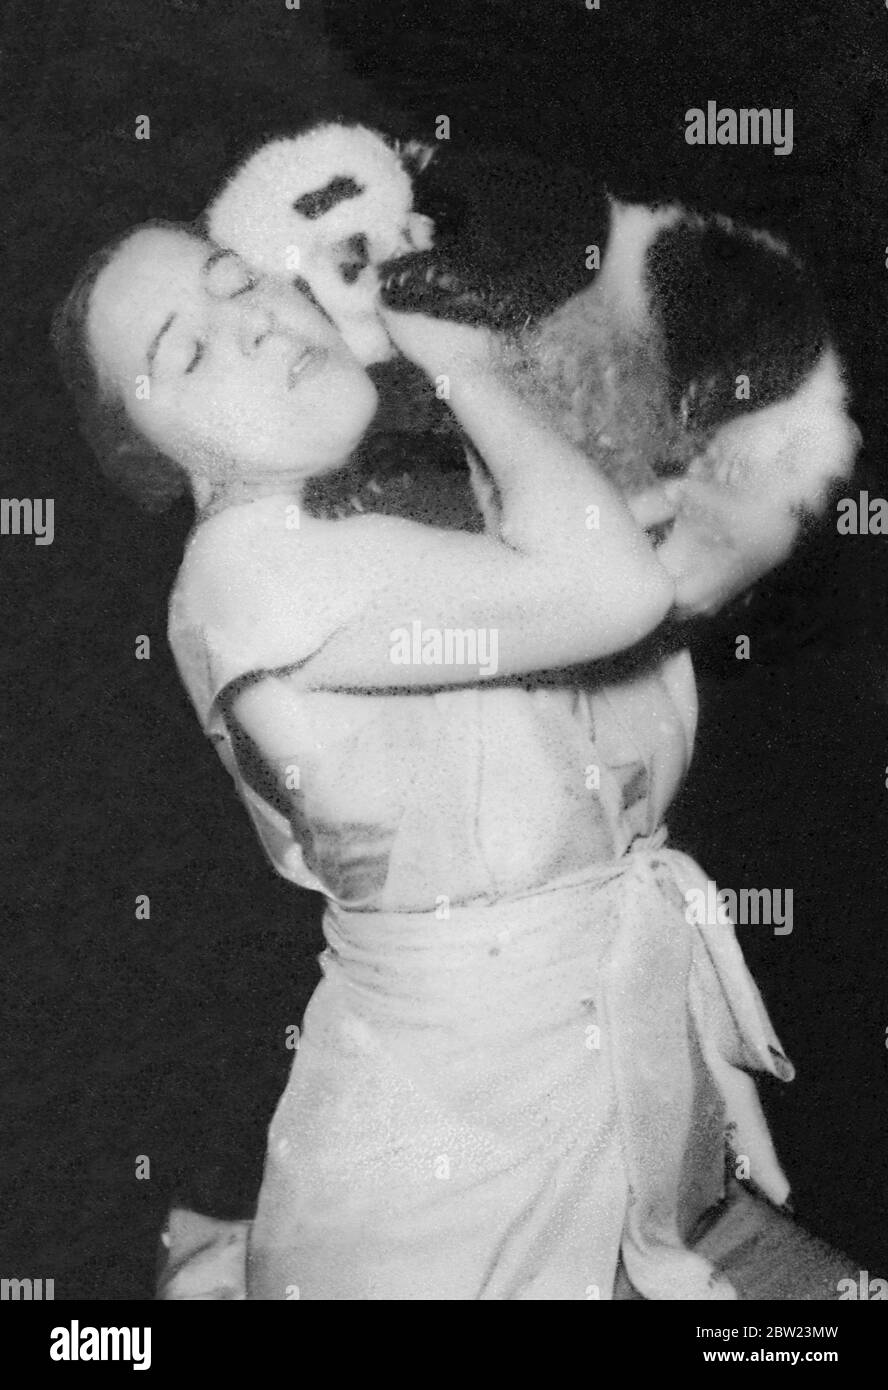 Frau Ruth Harkness Explorer, Witwe eines Explorers, ist es gelungen, einen riesigen Babypanda, eines der seltensten Tiere der Welt, lebendig zu erfassen. 15 Februar 1938 Stockfoto